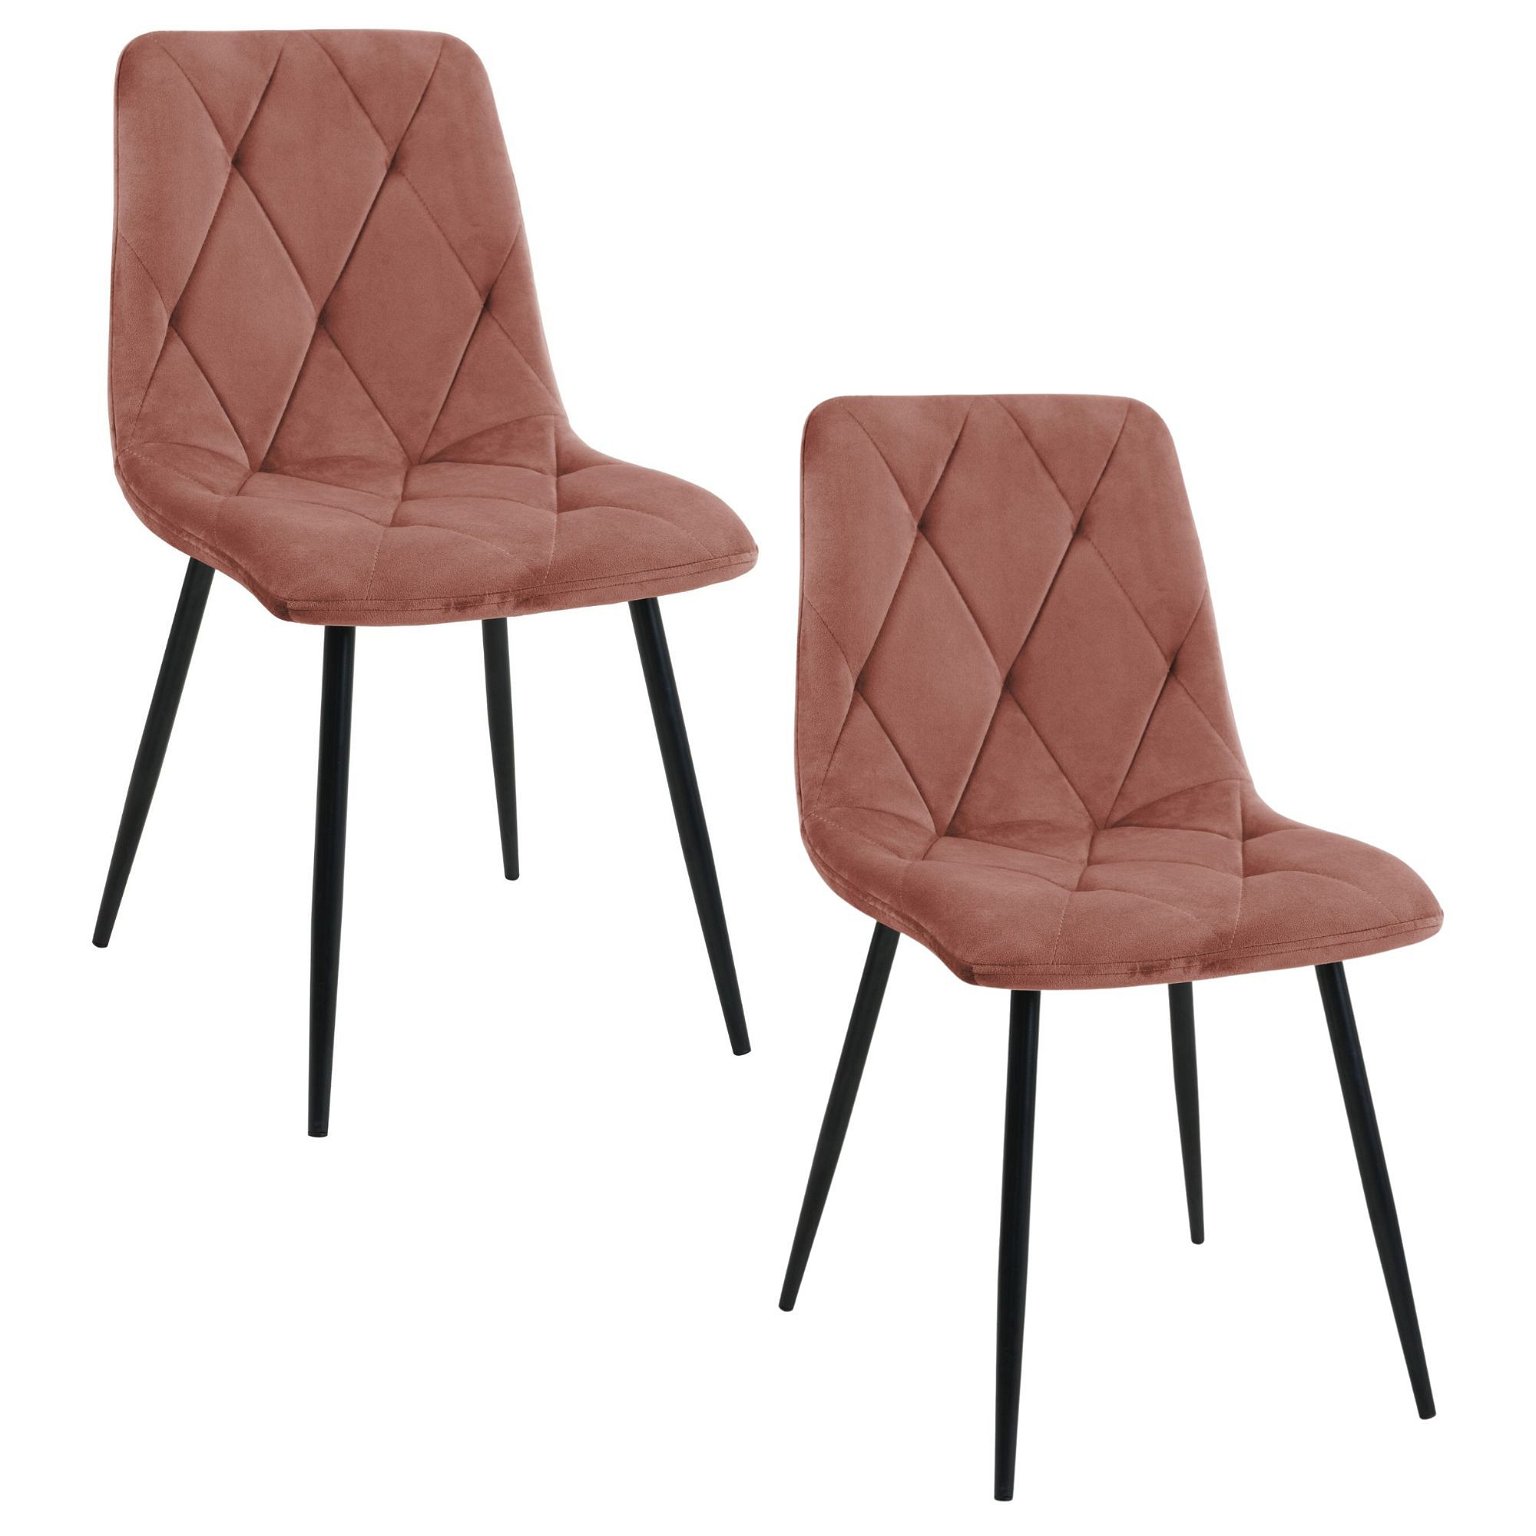 2-jų kėdžių komplektas SJ.3, rožinė - 1